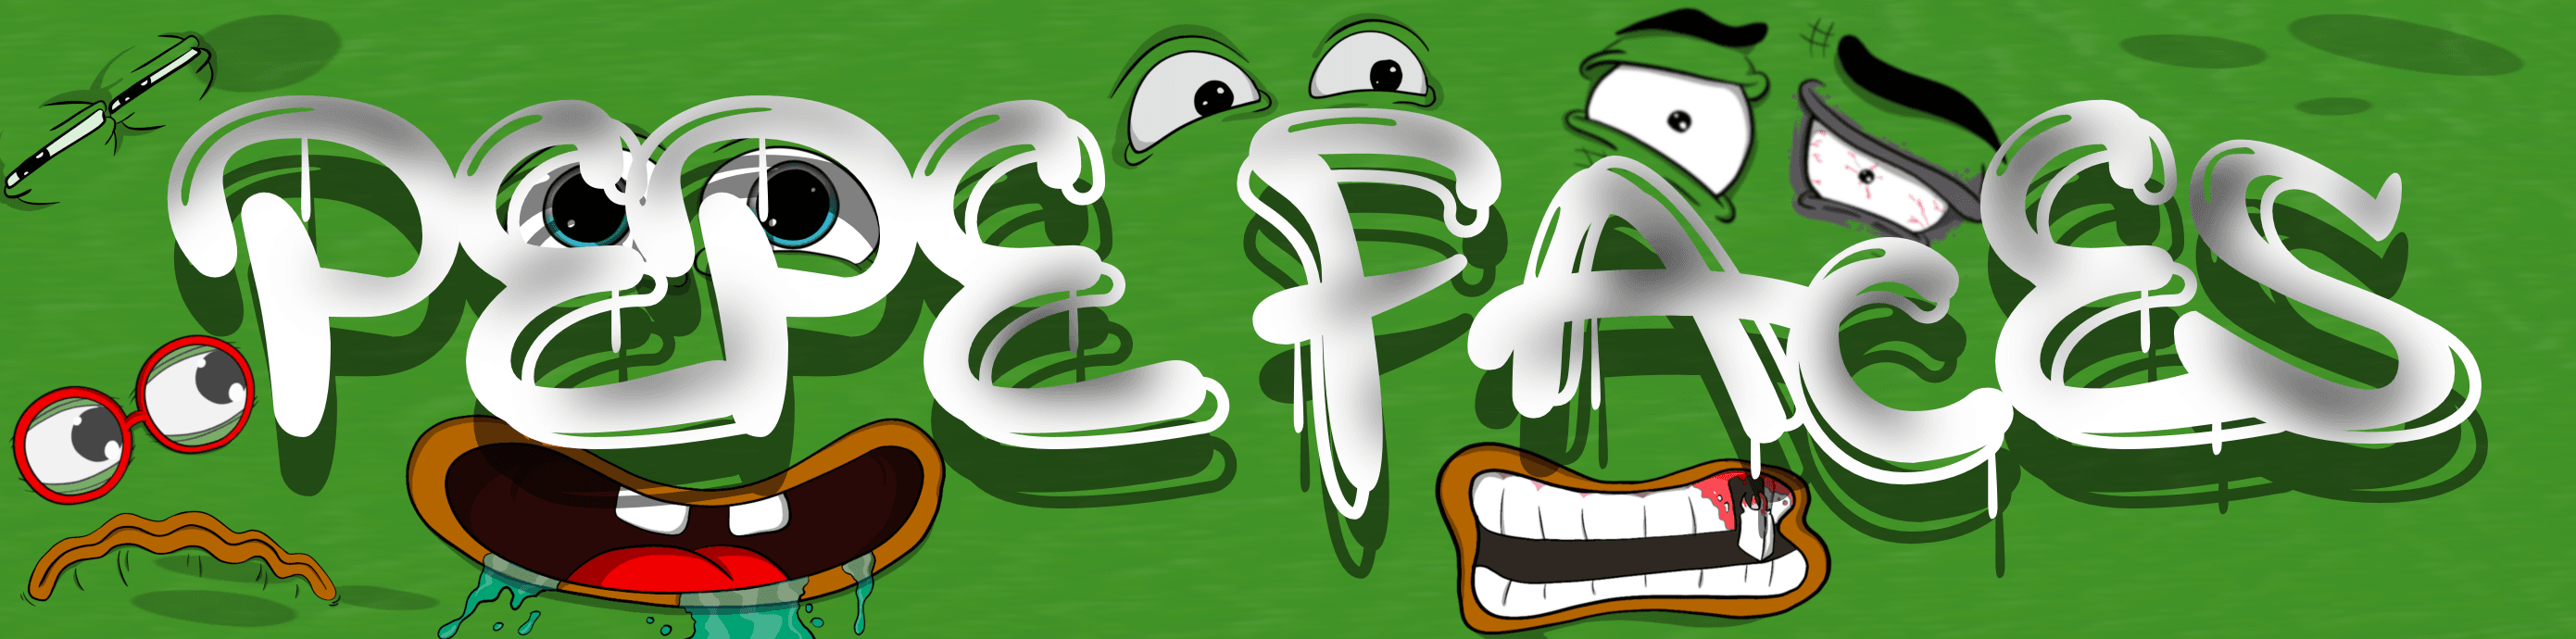 Pepe Faces